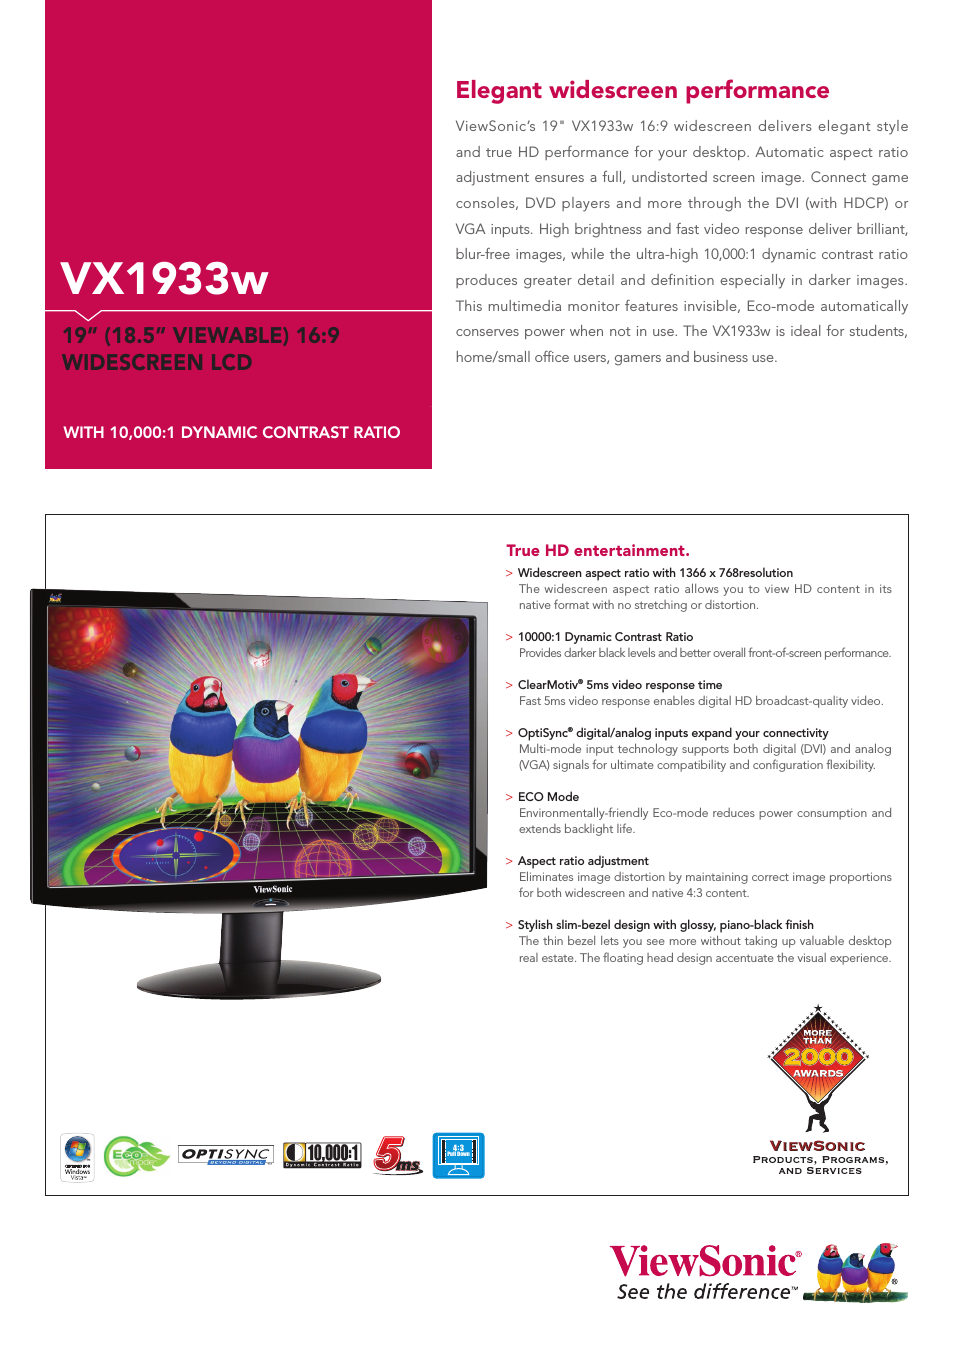 19" Widescreen LCD VX1933w